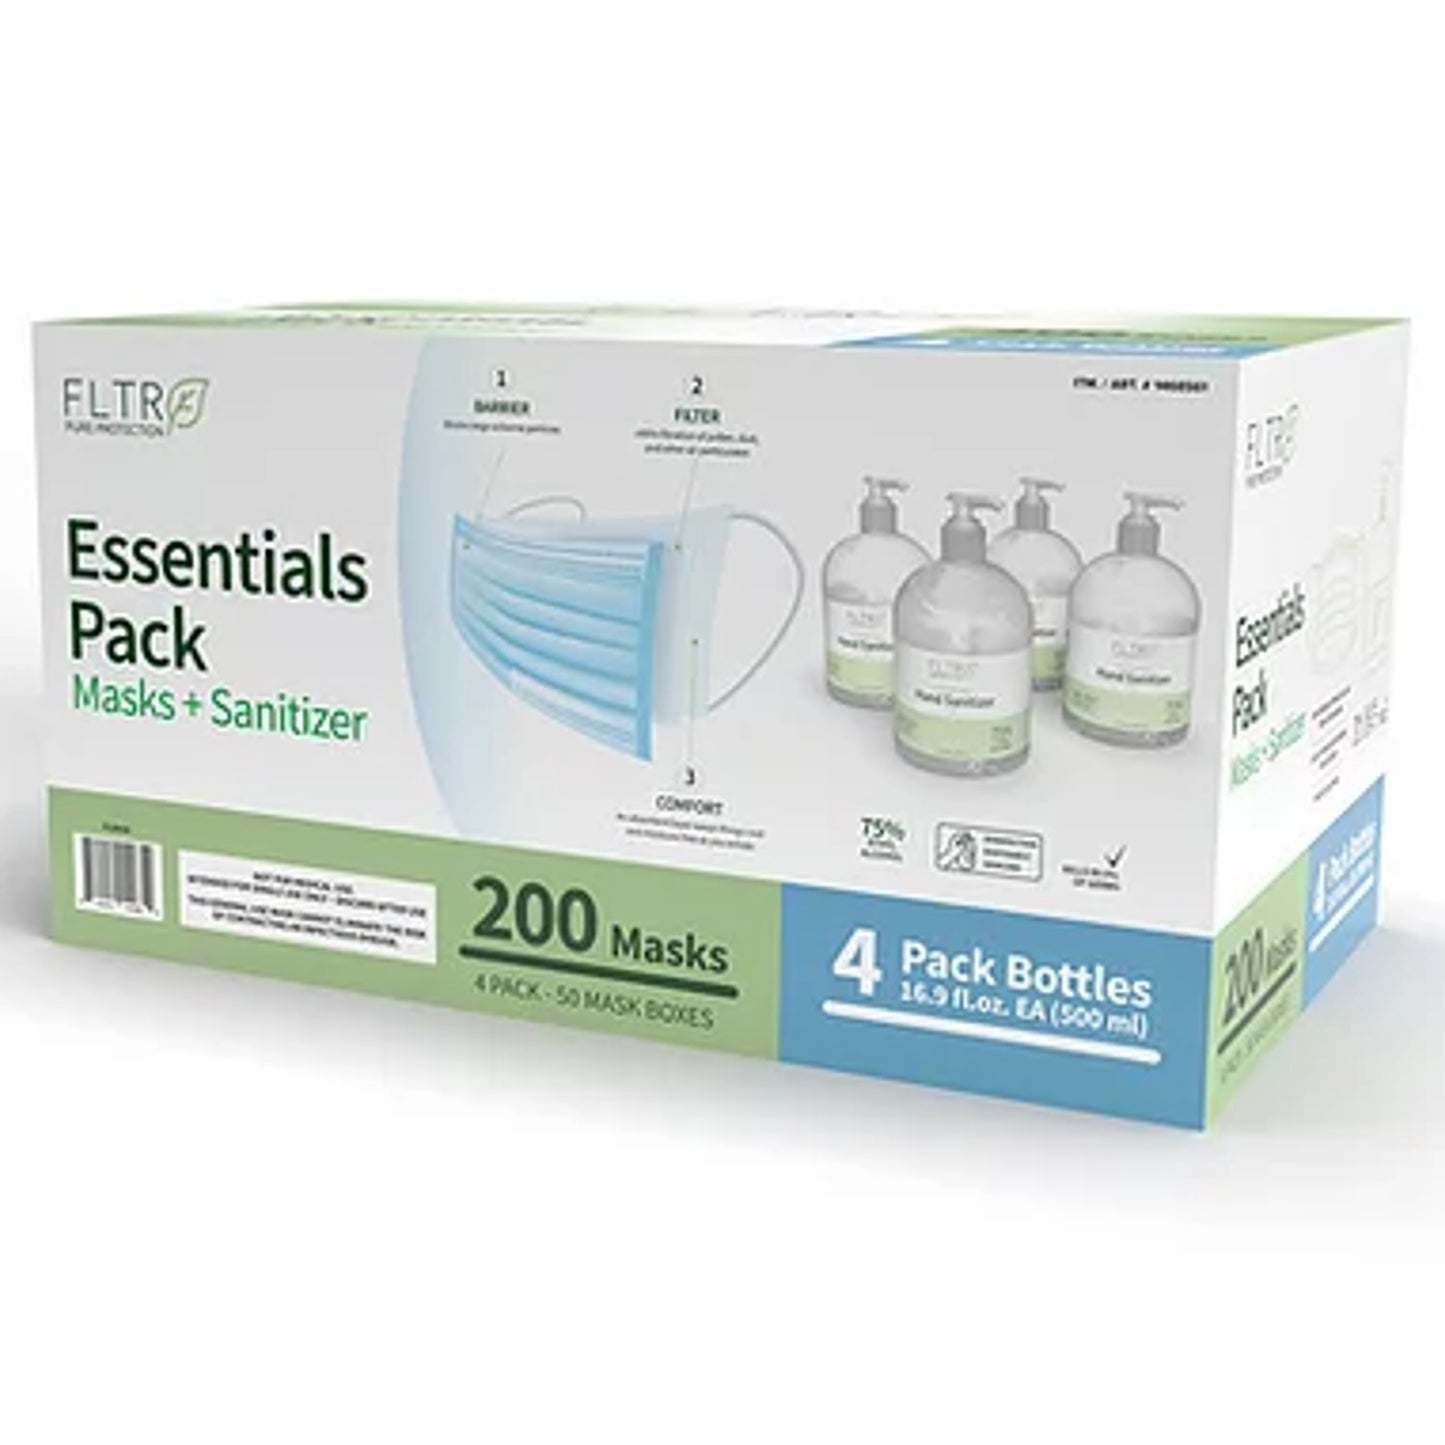 FLTR Essentials Pack 200 Mask + 4 Bottle Hand Sanitizer FDA registered